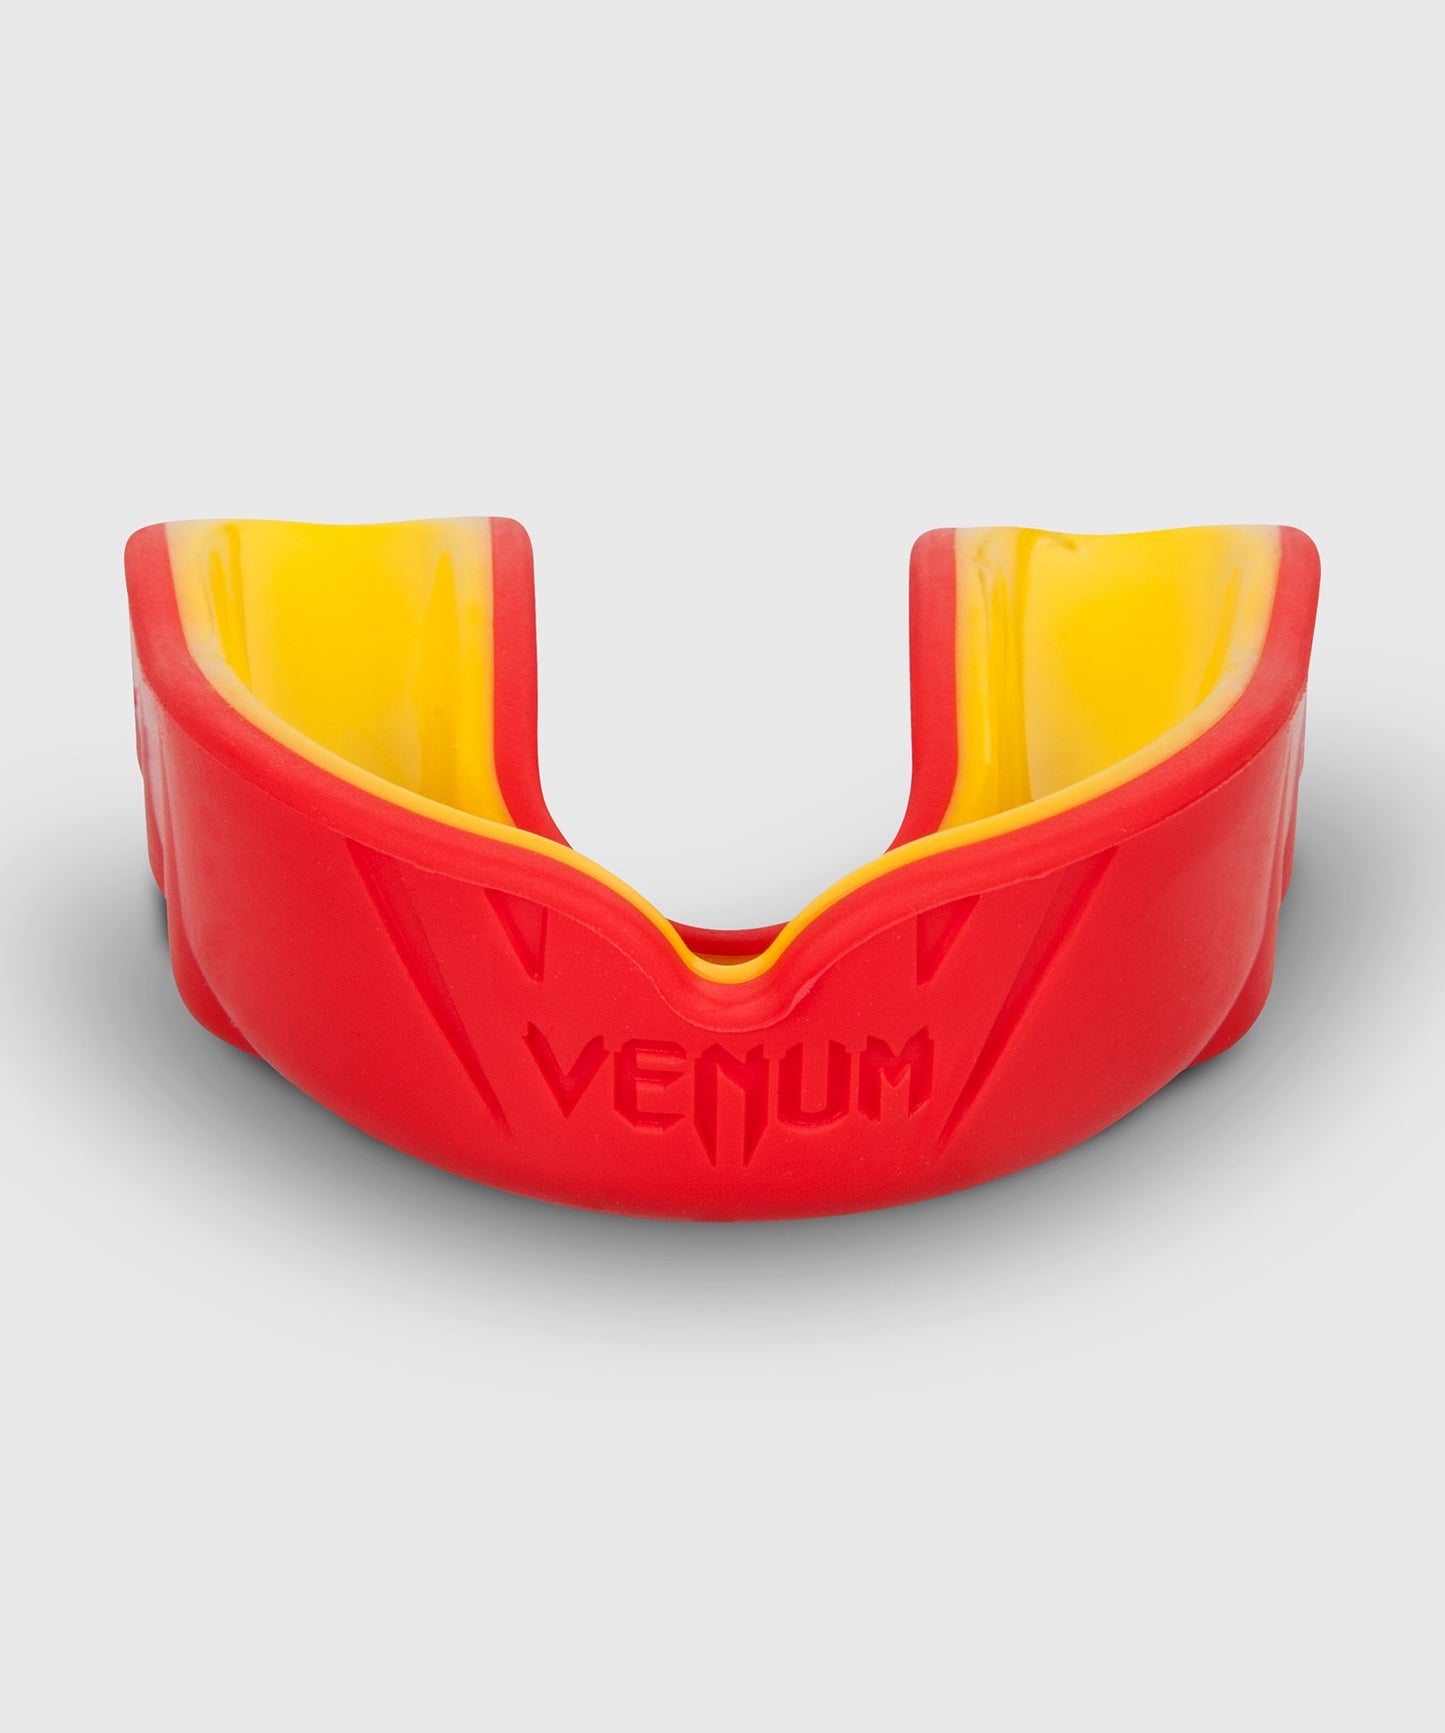 Protège-dents Venum Challenger - Rouge/Jaune - Protège-dents